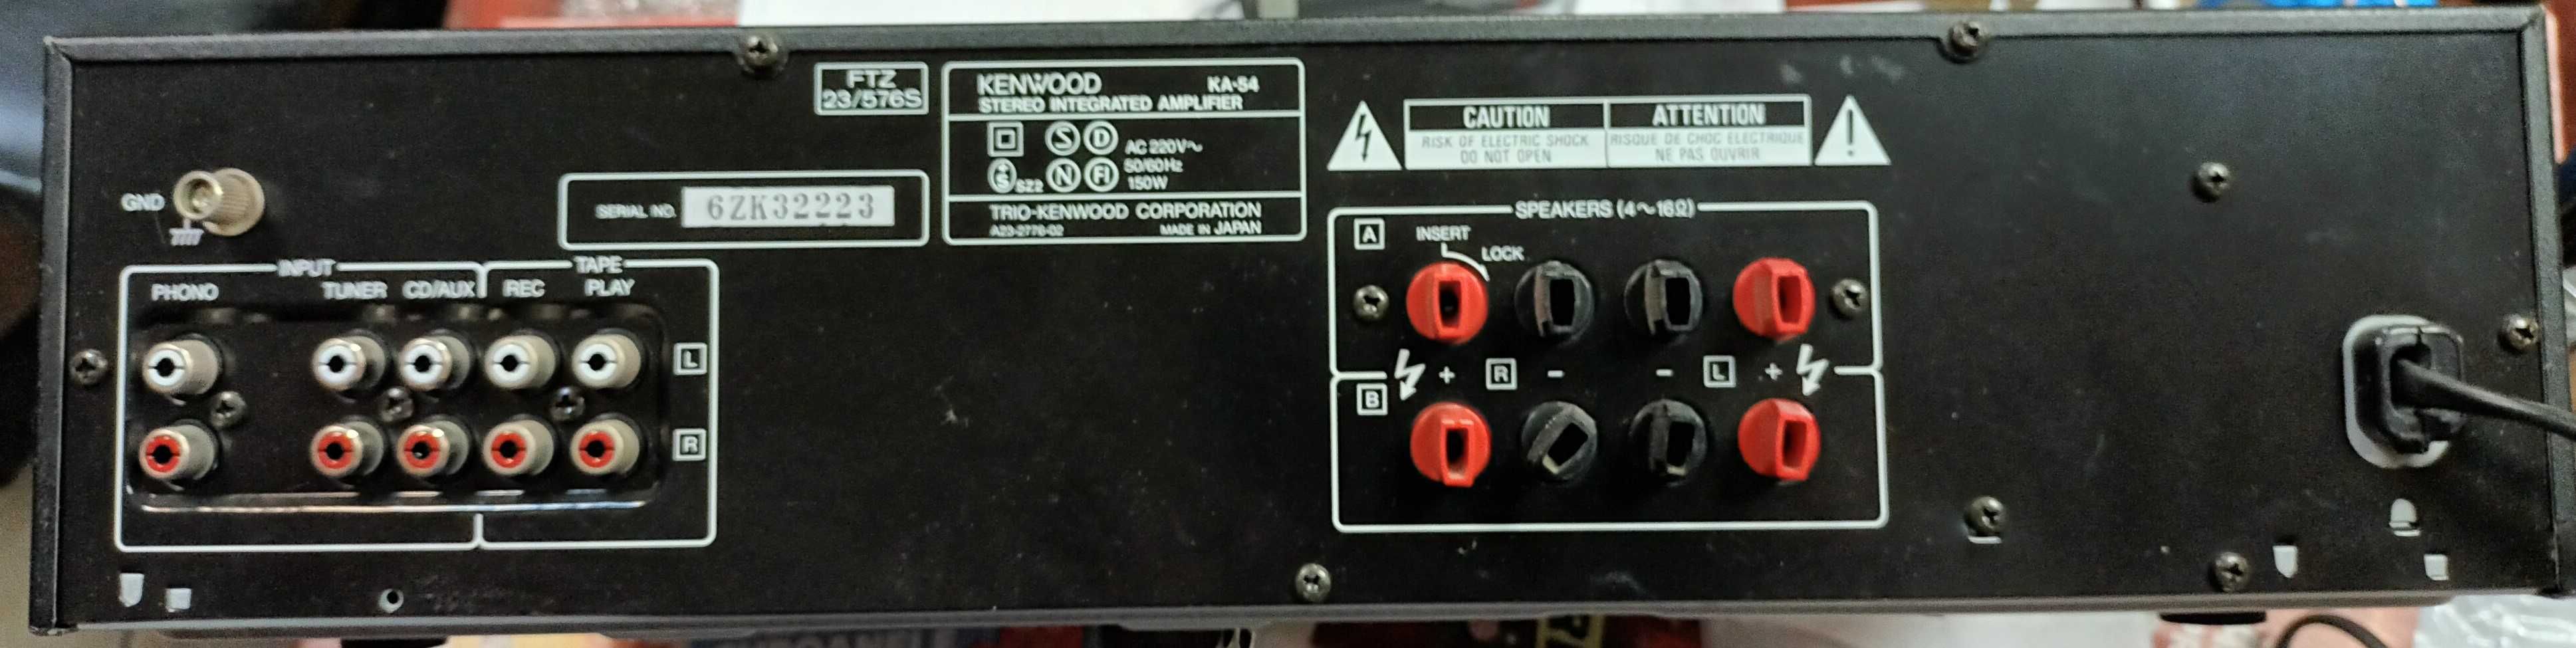 Amplificator Kenwood  KA 54